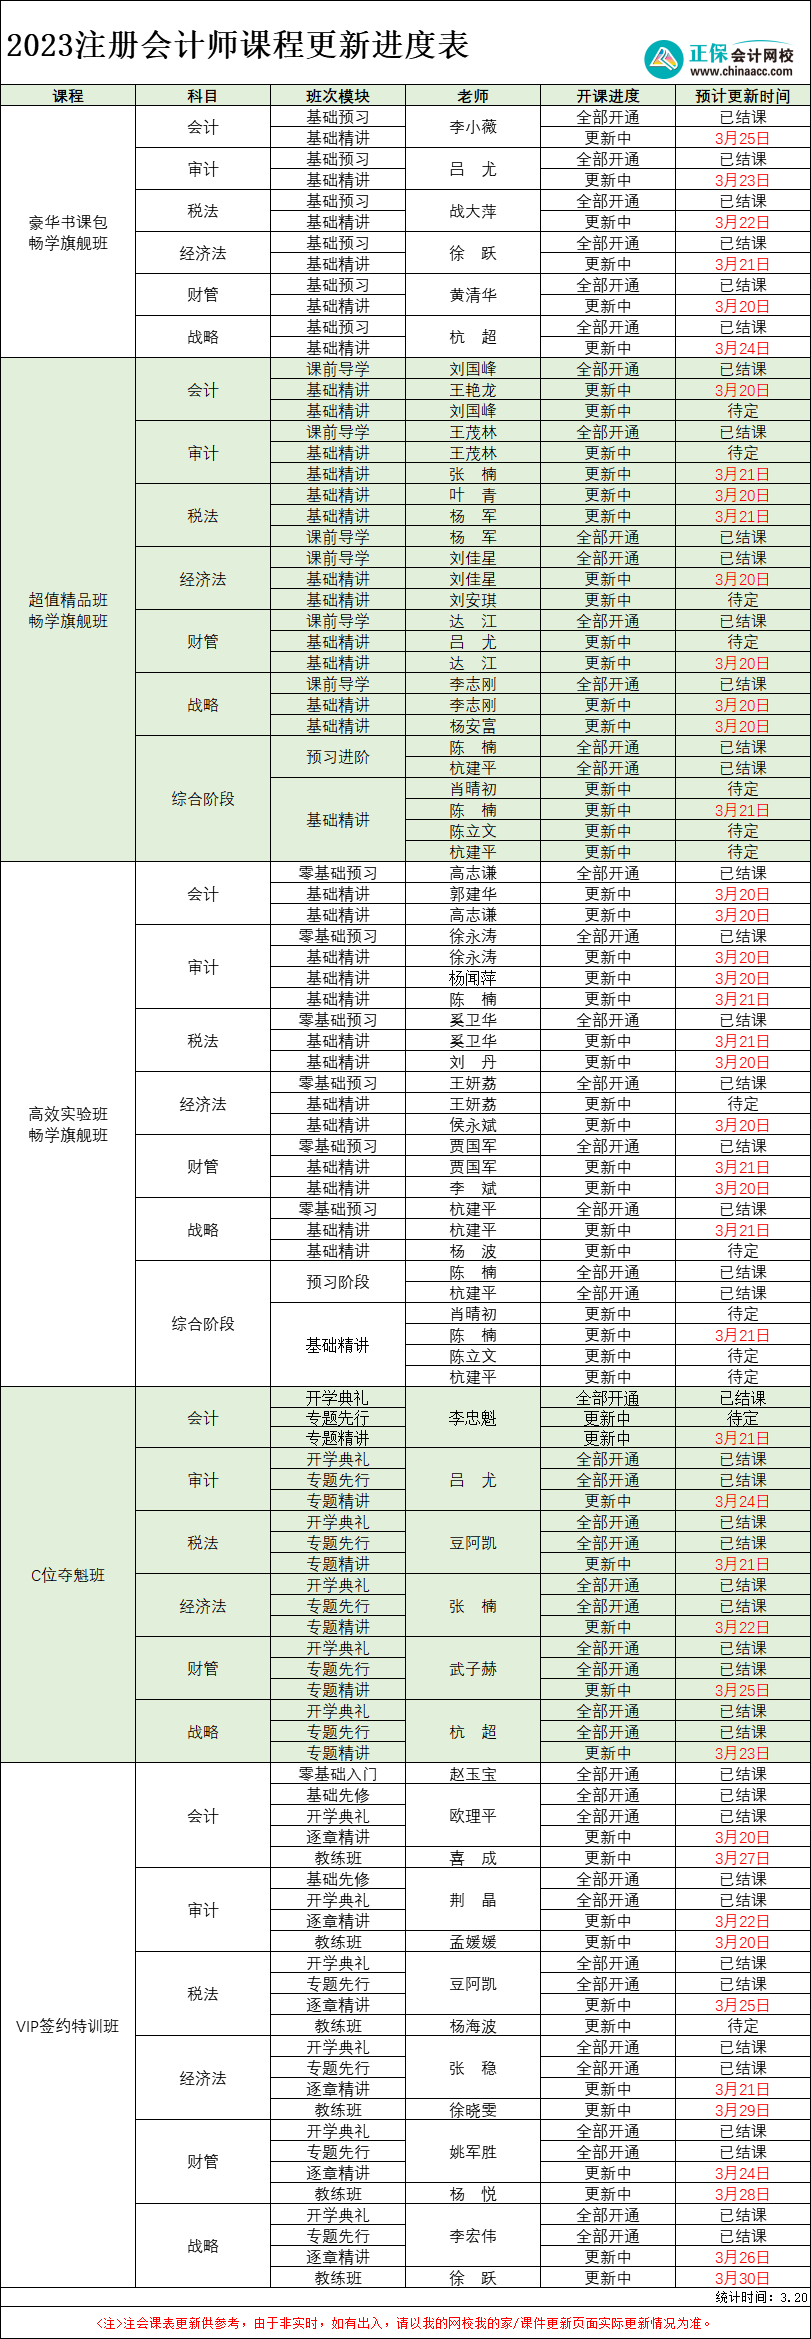 【最新】2023年注册会计师各班次课程更新进度表(3.20)